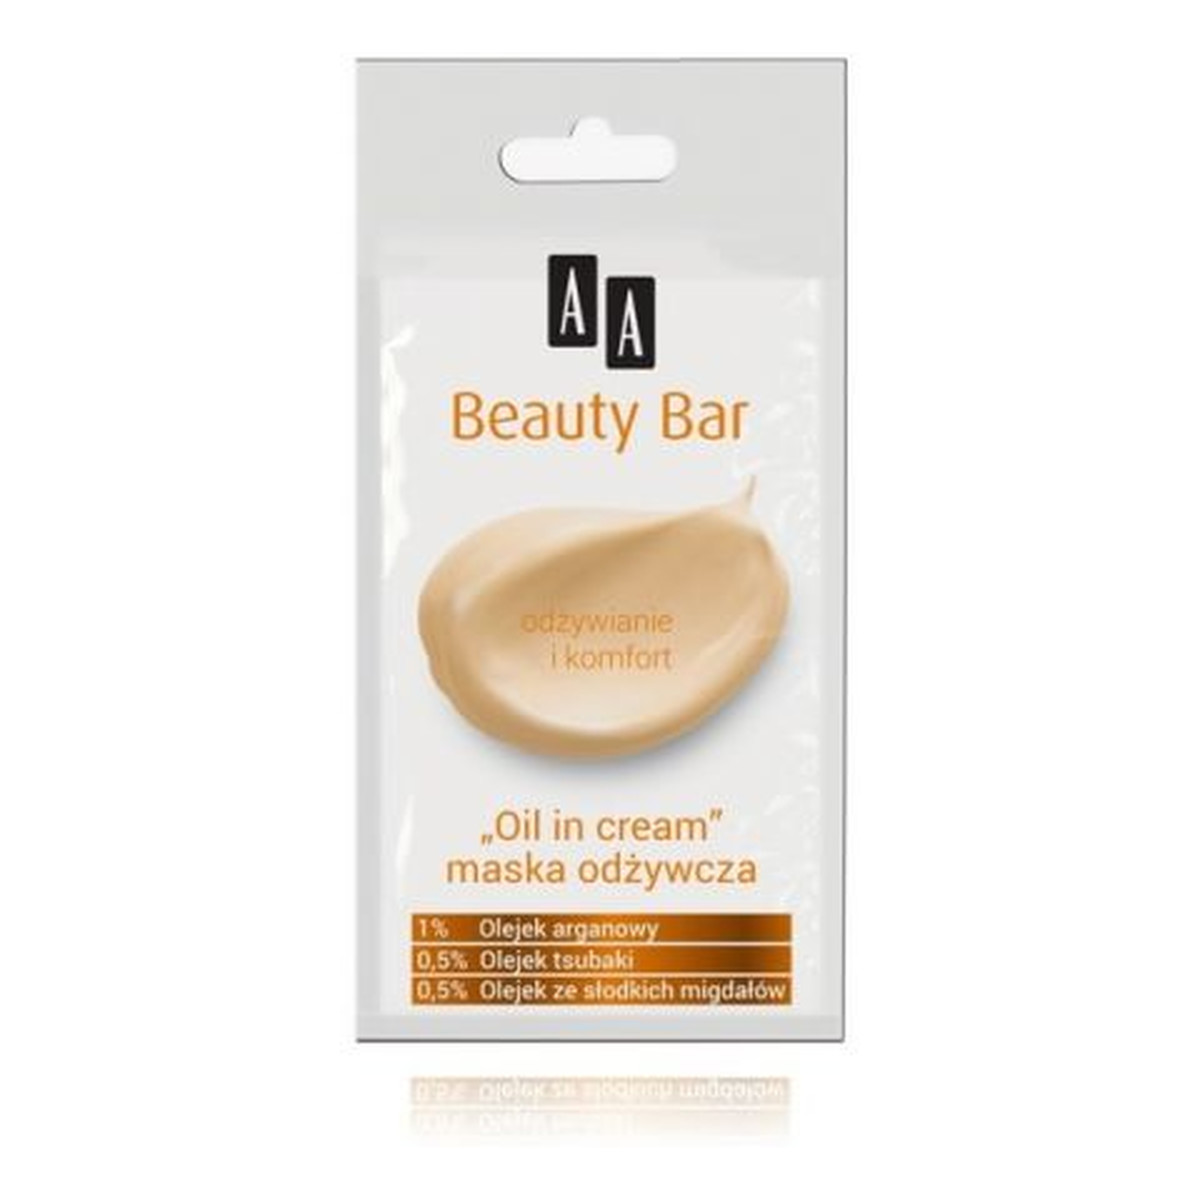 AA AA Beauty Bar Maska odżywcza "Oil in Cream" 8ml